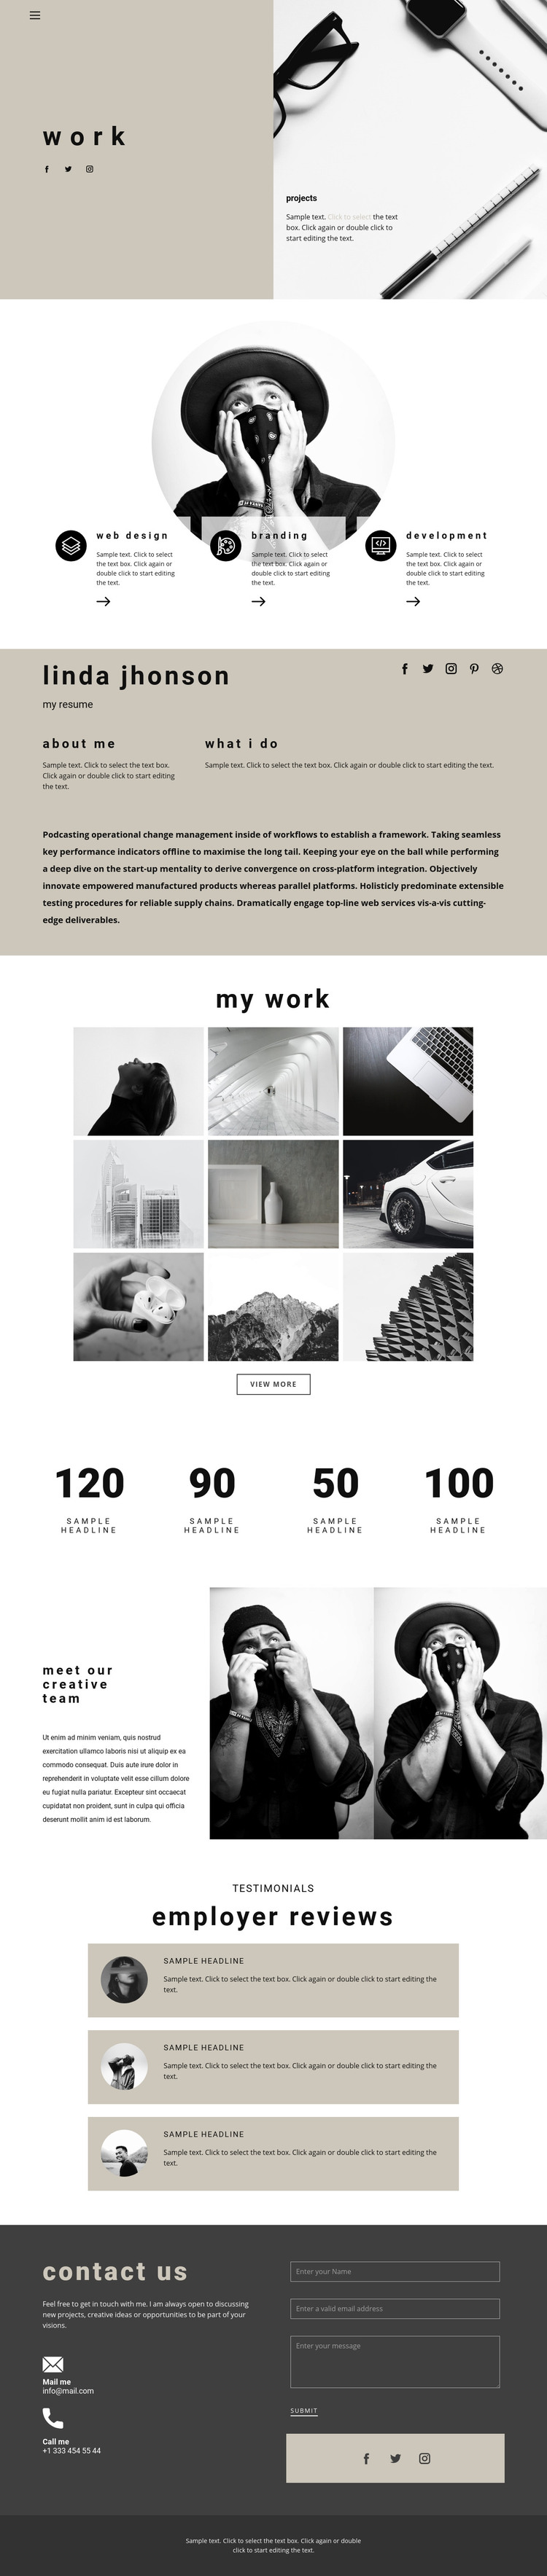 Art space resume Homepage Design